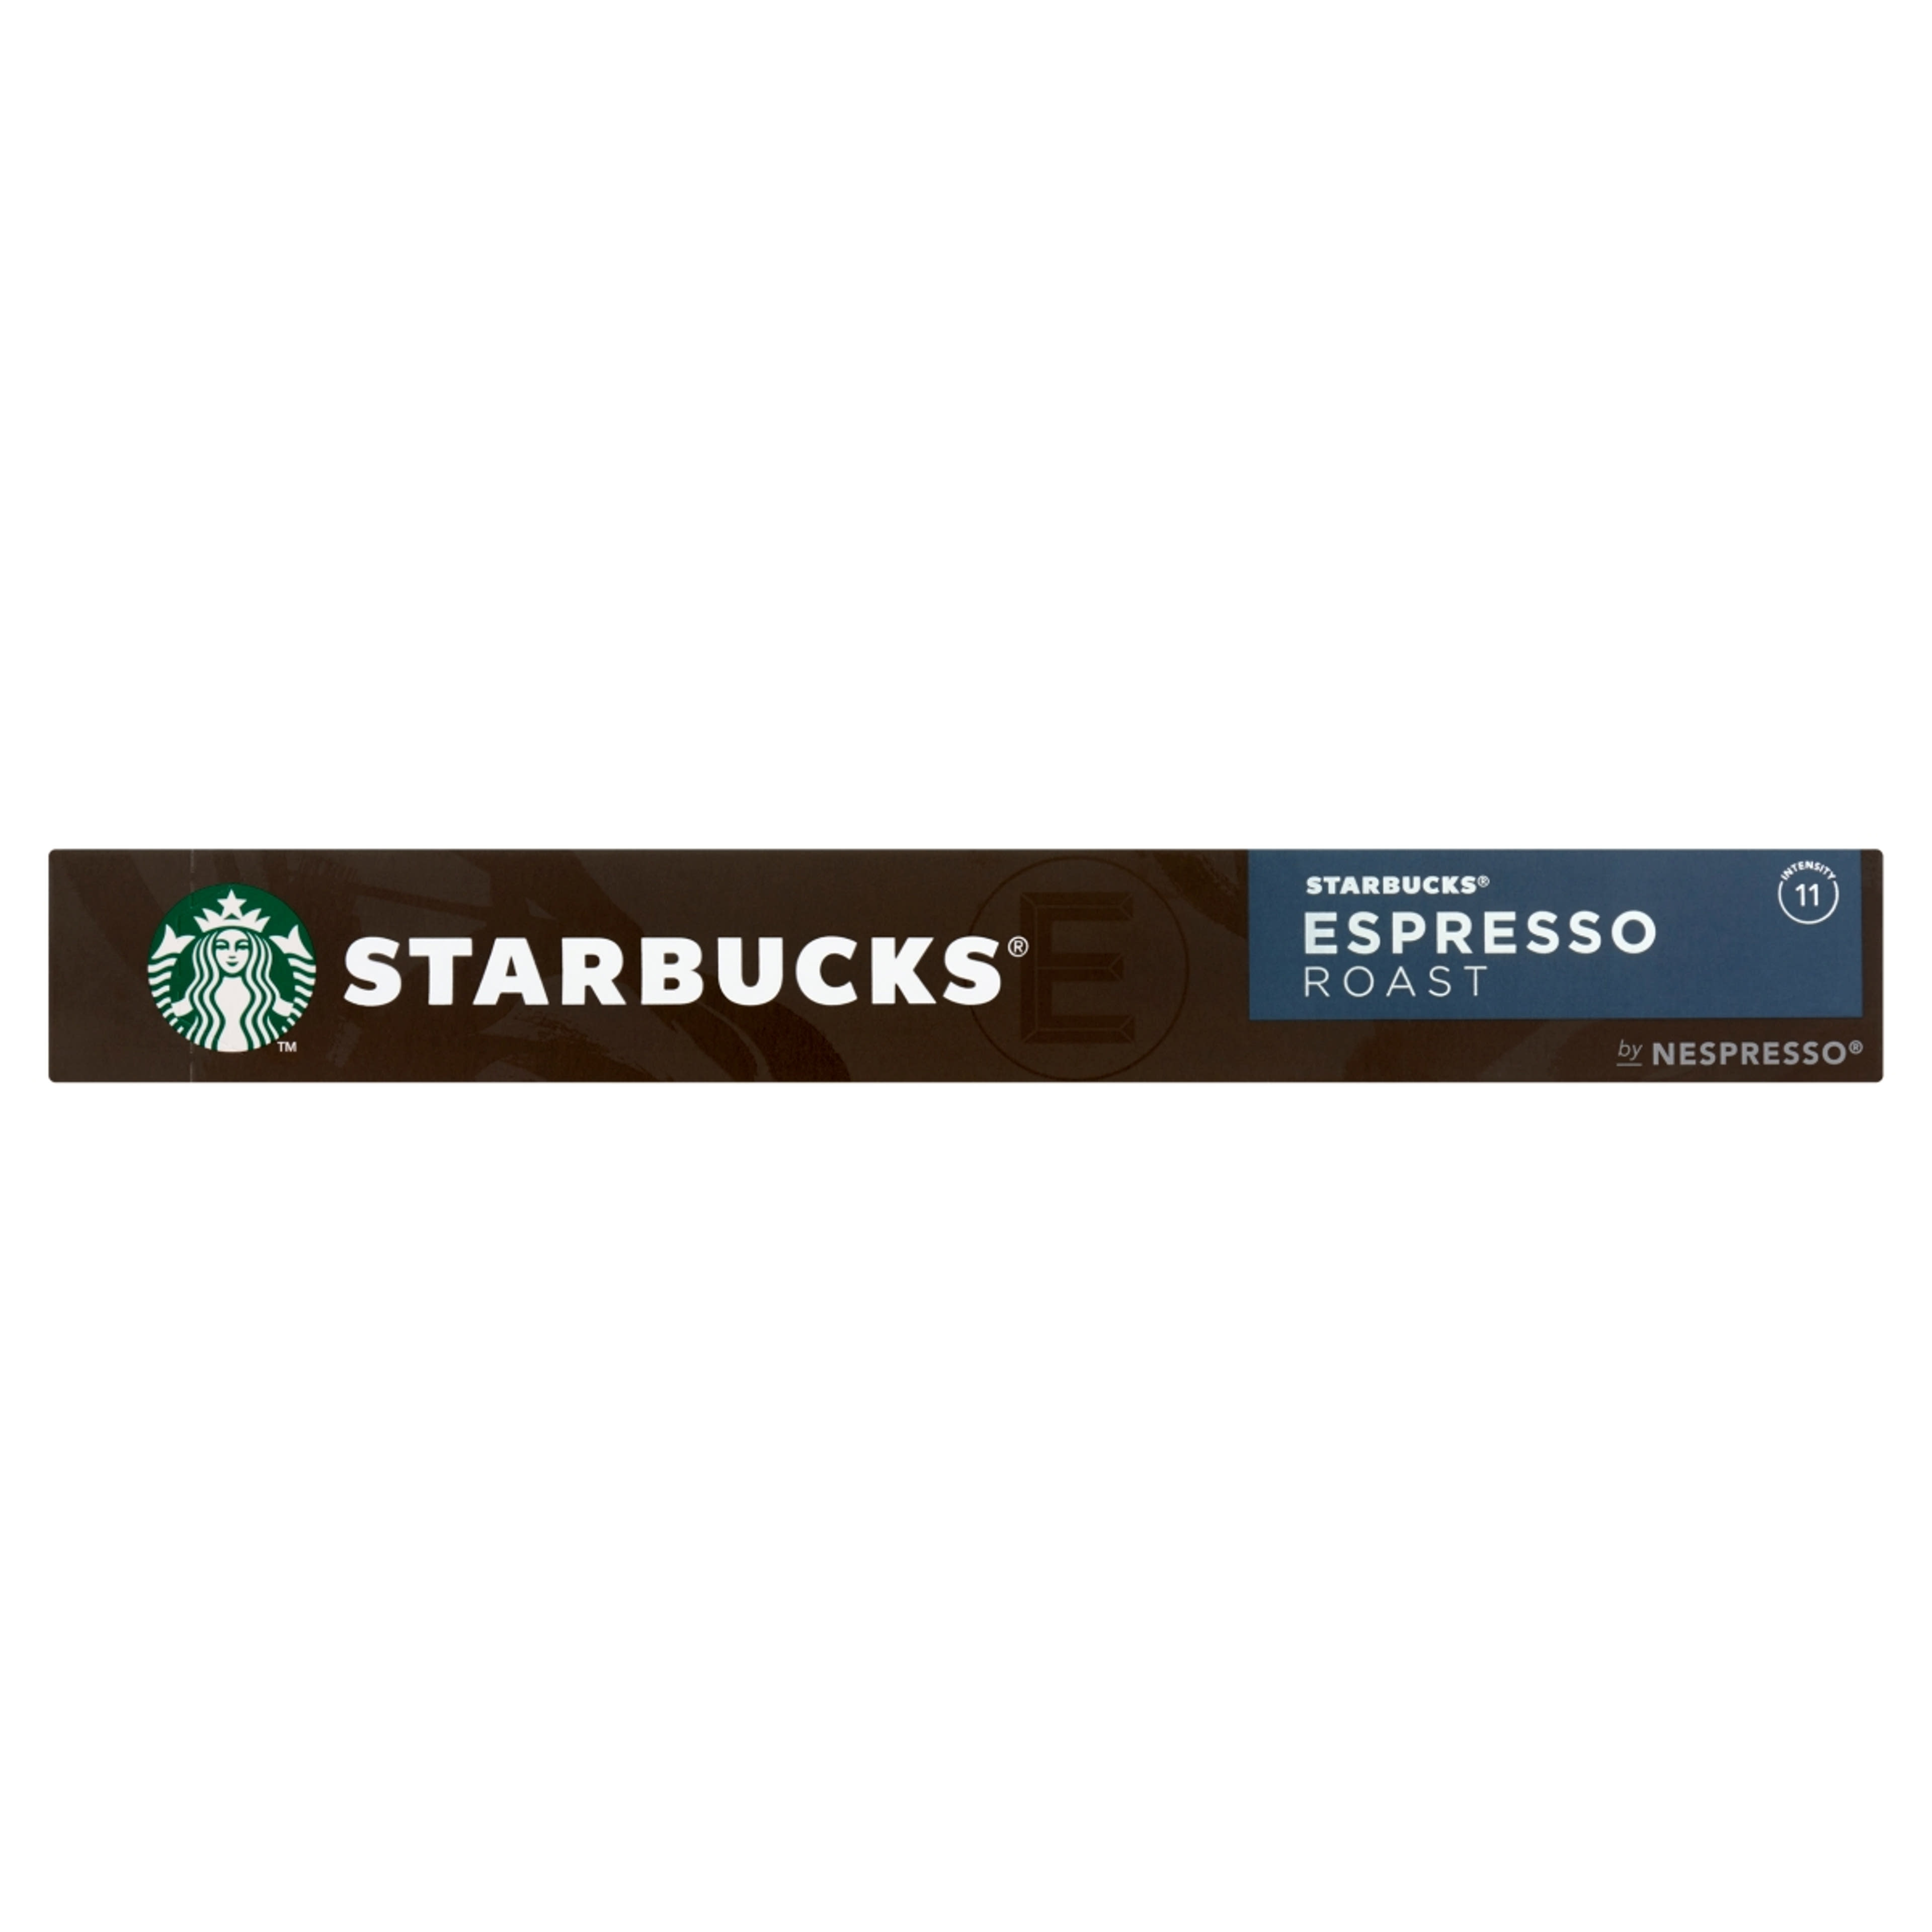 Starbucks by Nespresso espresso roast - 10 db